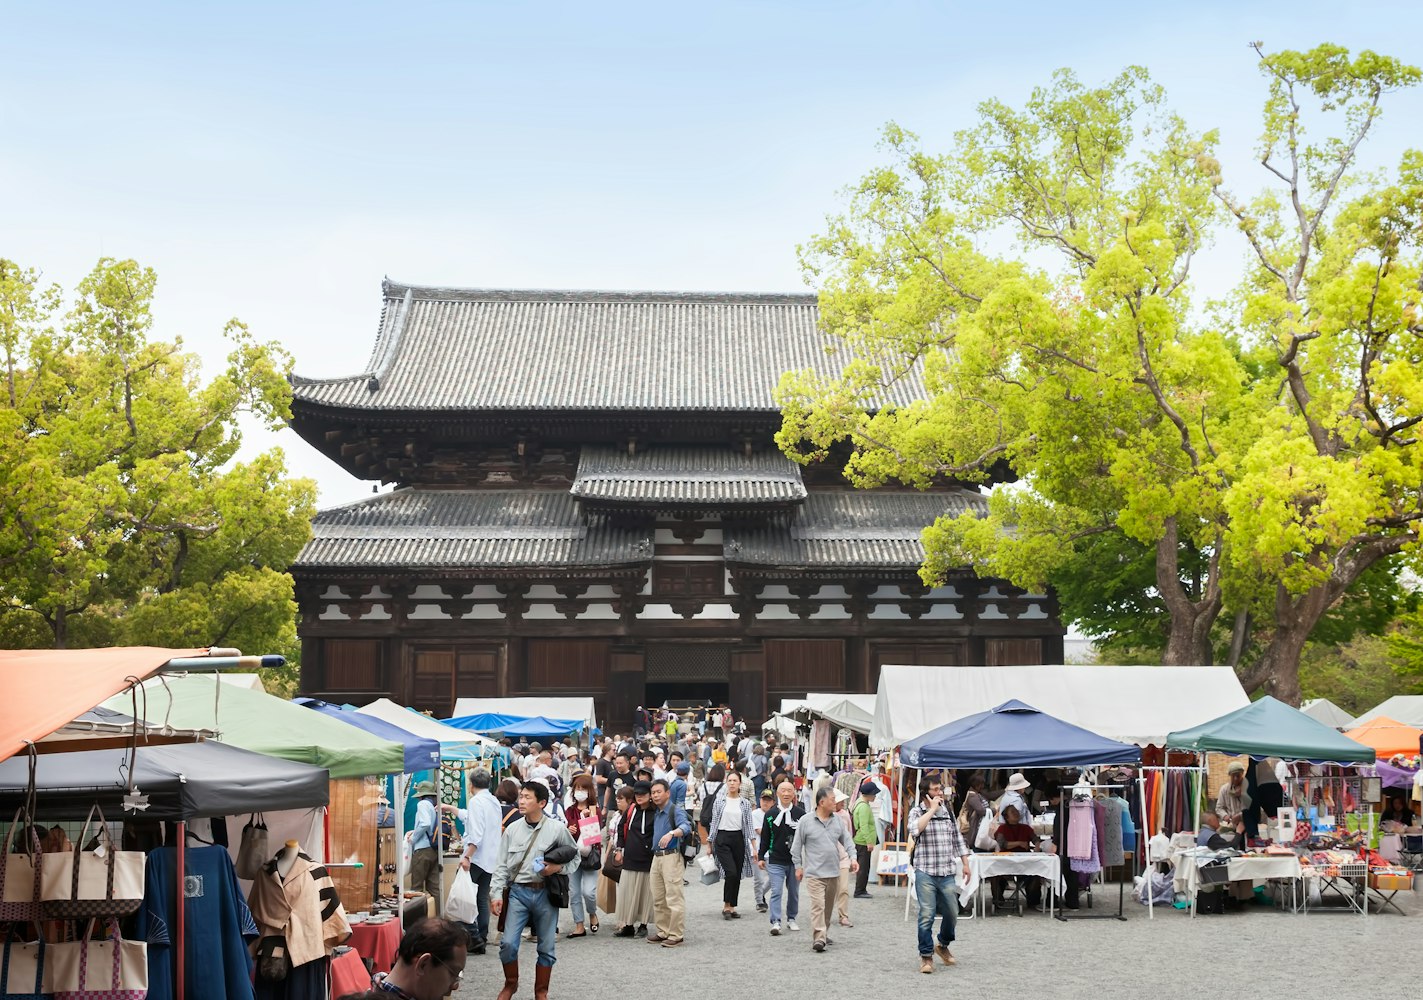 People shopping in Kobo-ichi market at Toji temple